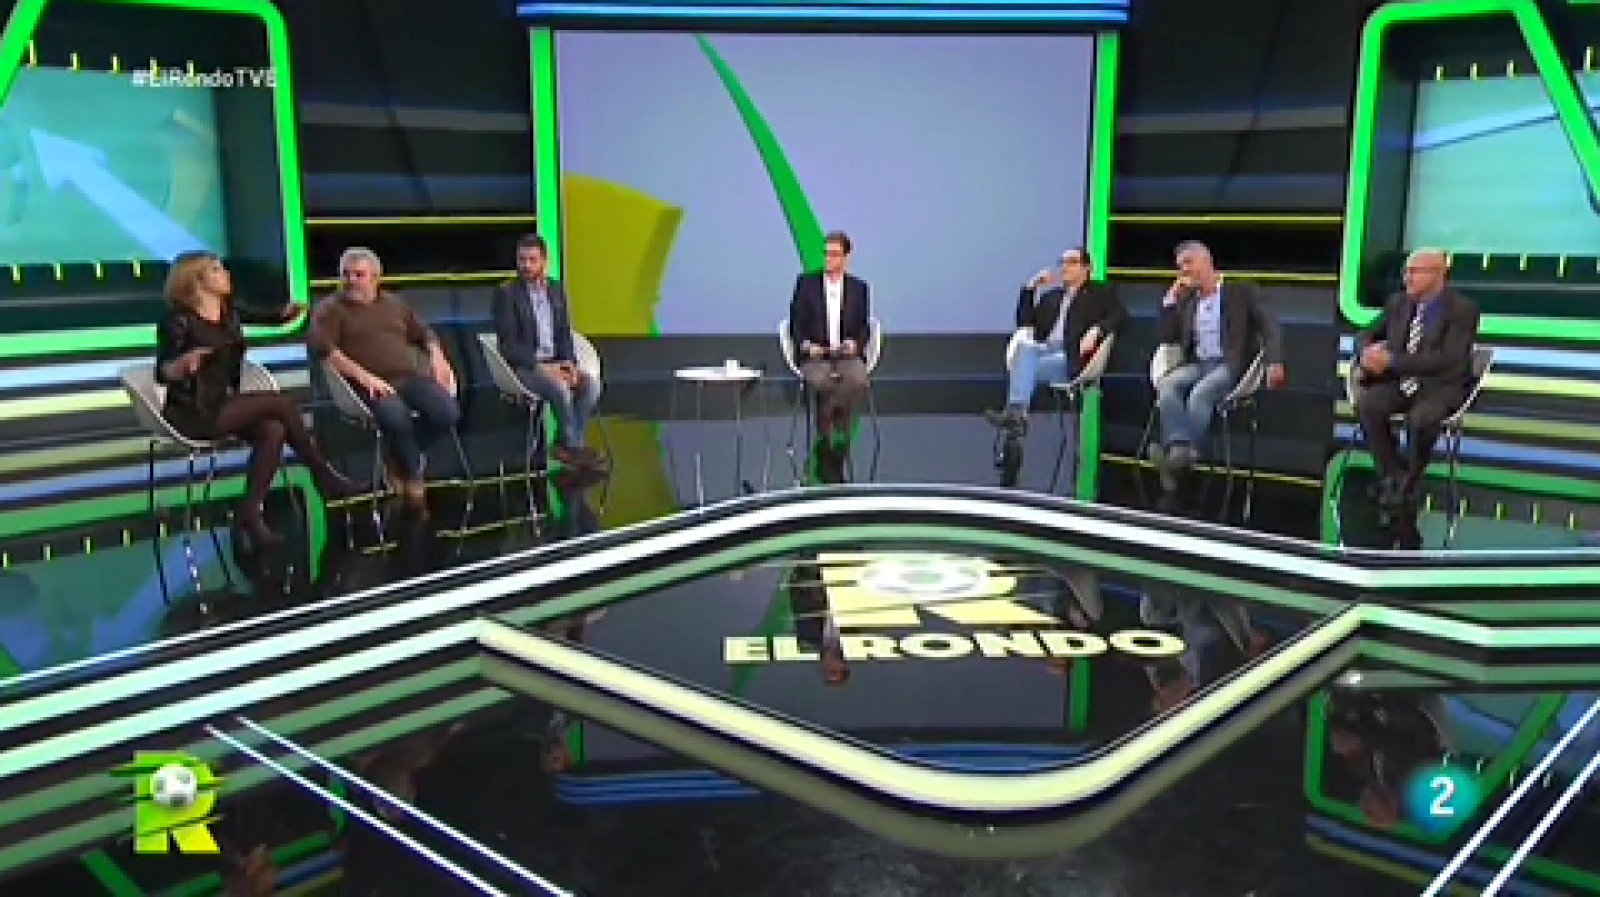 El Rondo - Declaracions de Piqué sobre L'Espanyol